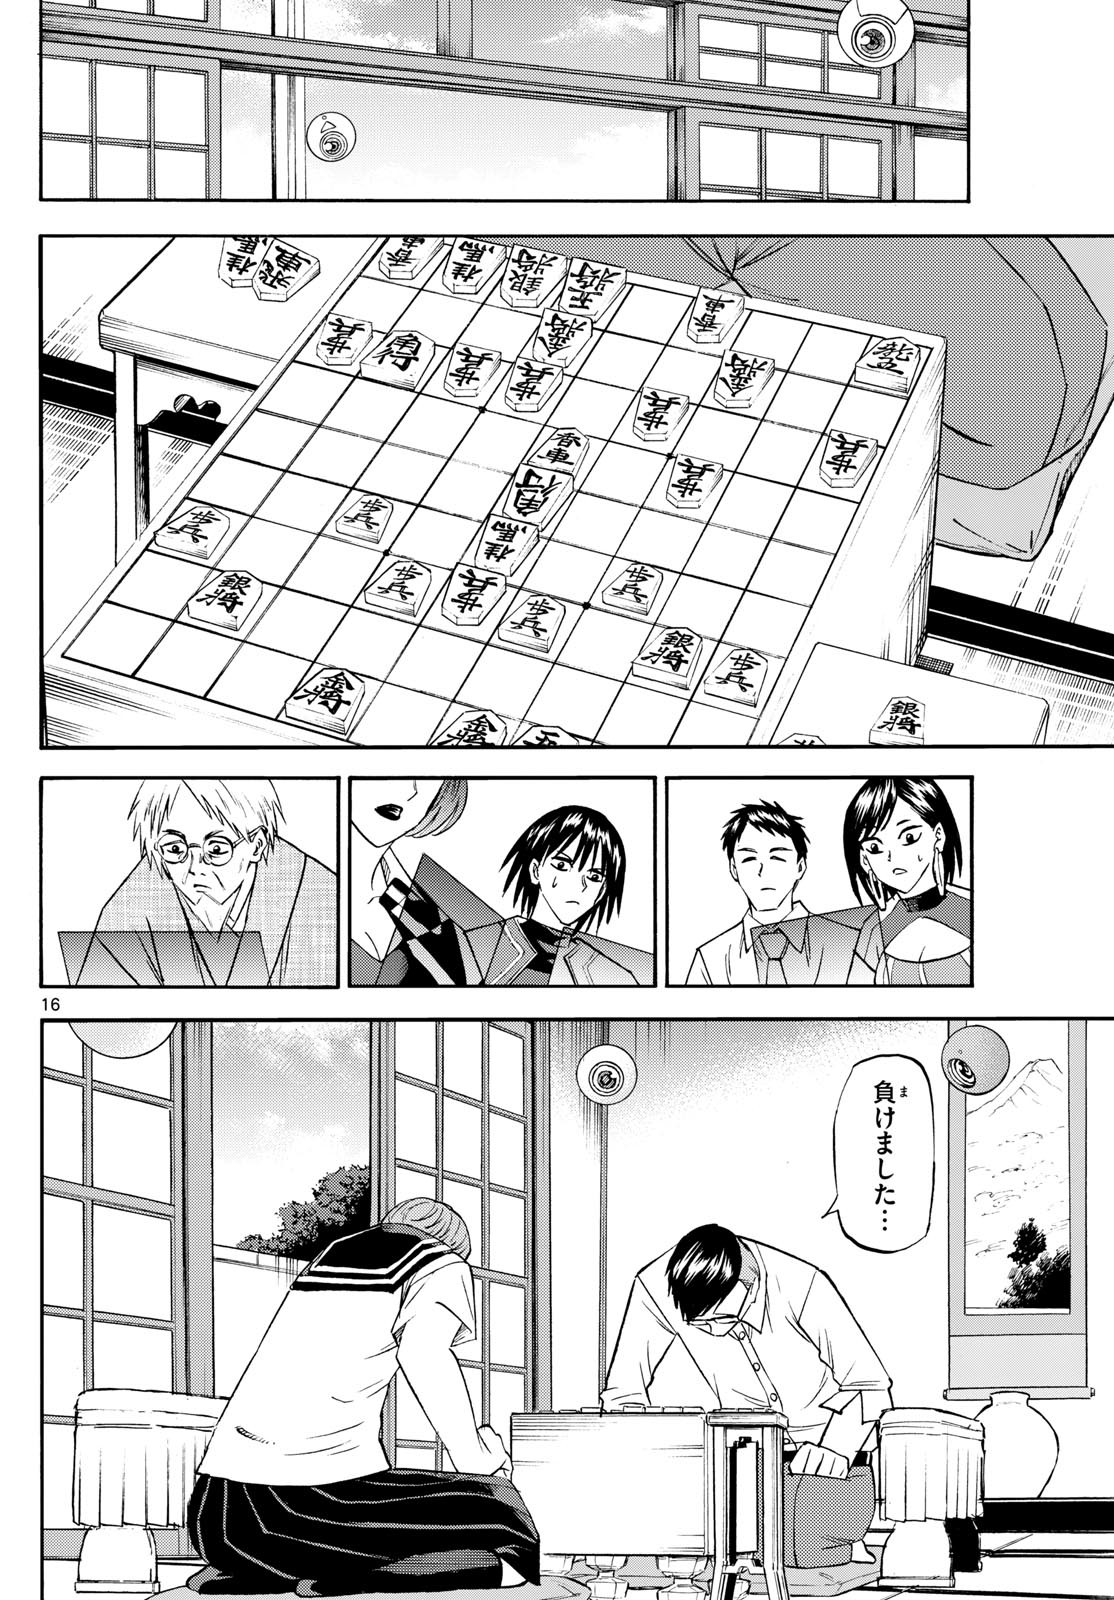 Ryu-to-Ichigo - Chapter 196 - Page 16